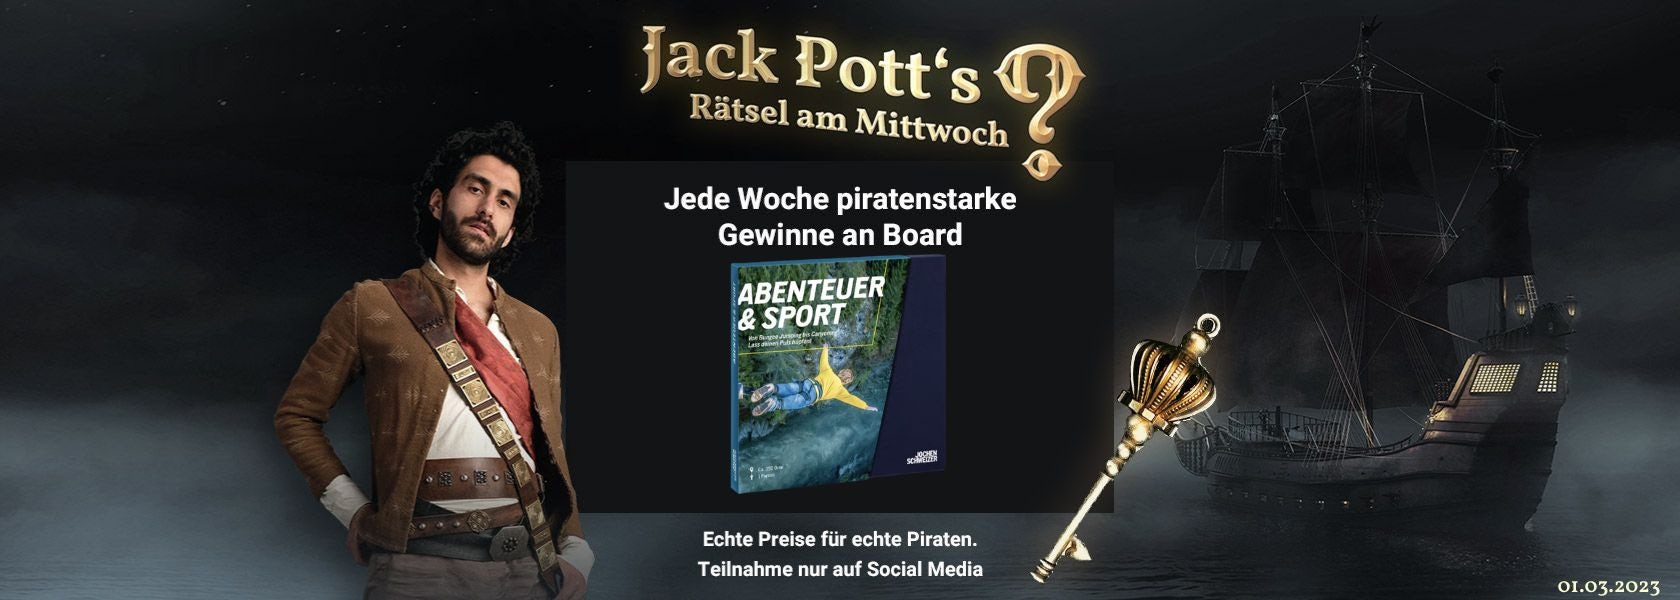 JPI-Header-Jack-Potts-Rätsel-Am-Mittwoch-0103